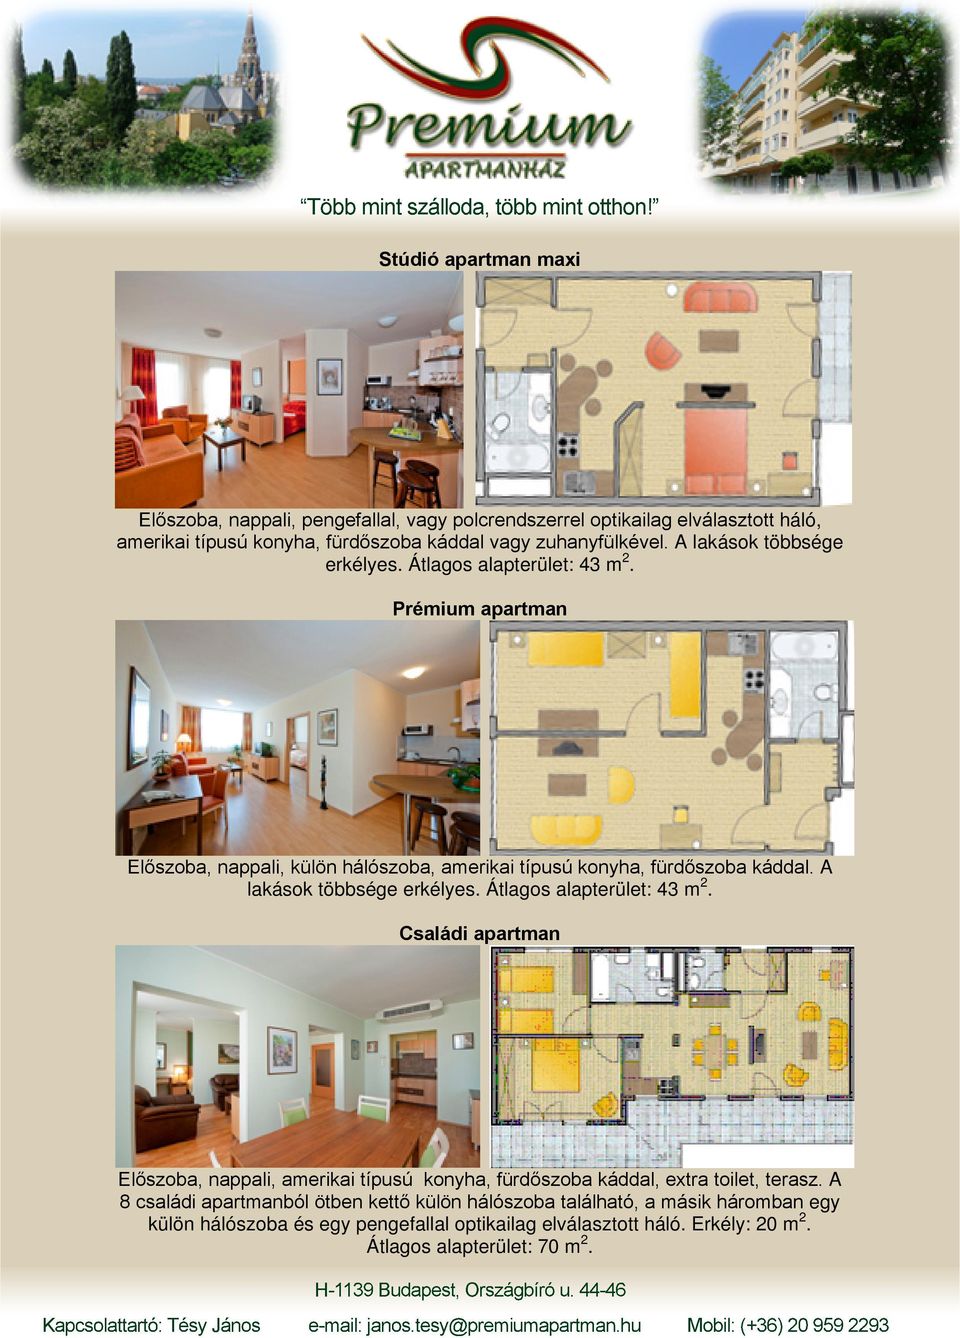 A lakások többsége erkélyes. Átlagos alapterület: 43 m 2. Családi apartman Előszoba, nappali, amerikai típusú konyha, fürdőszoba káddal, extra toilet, terasz.